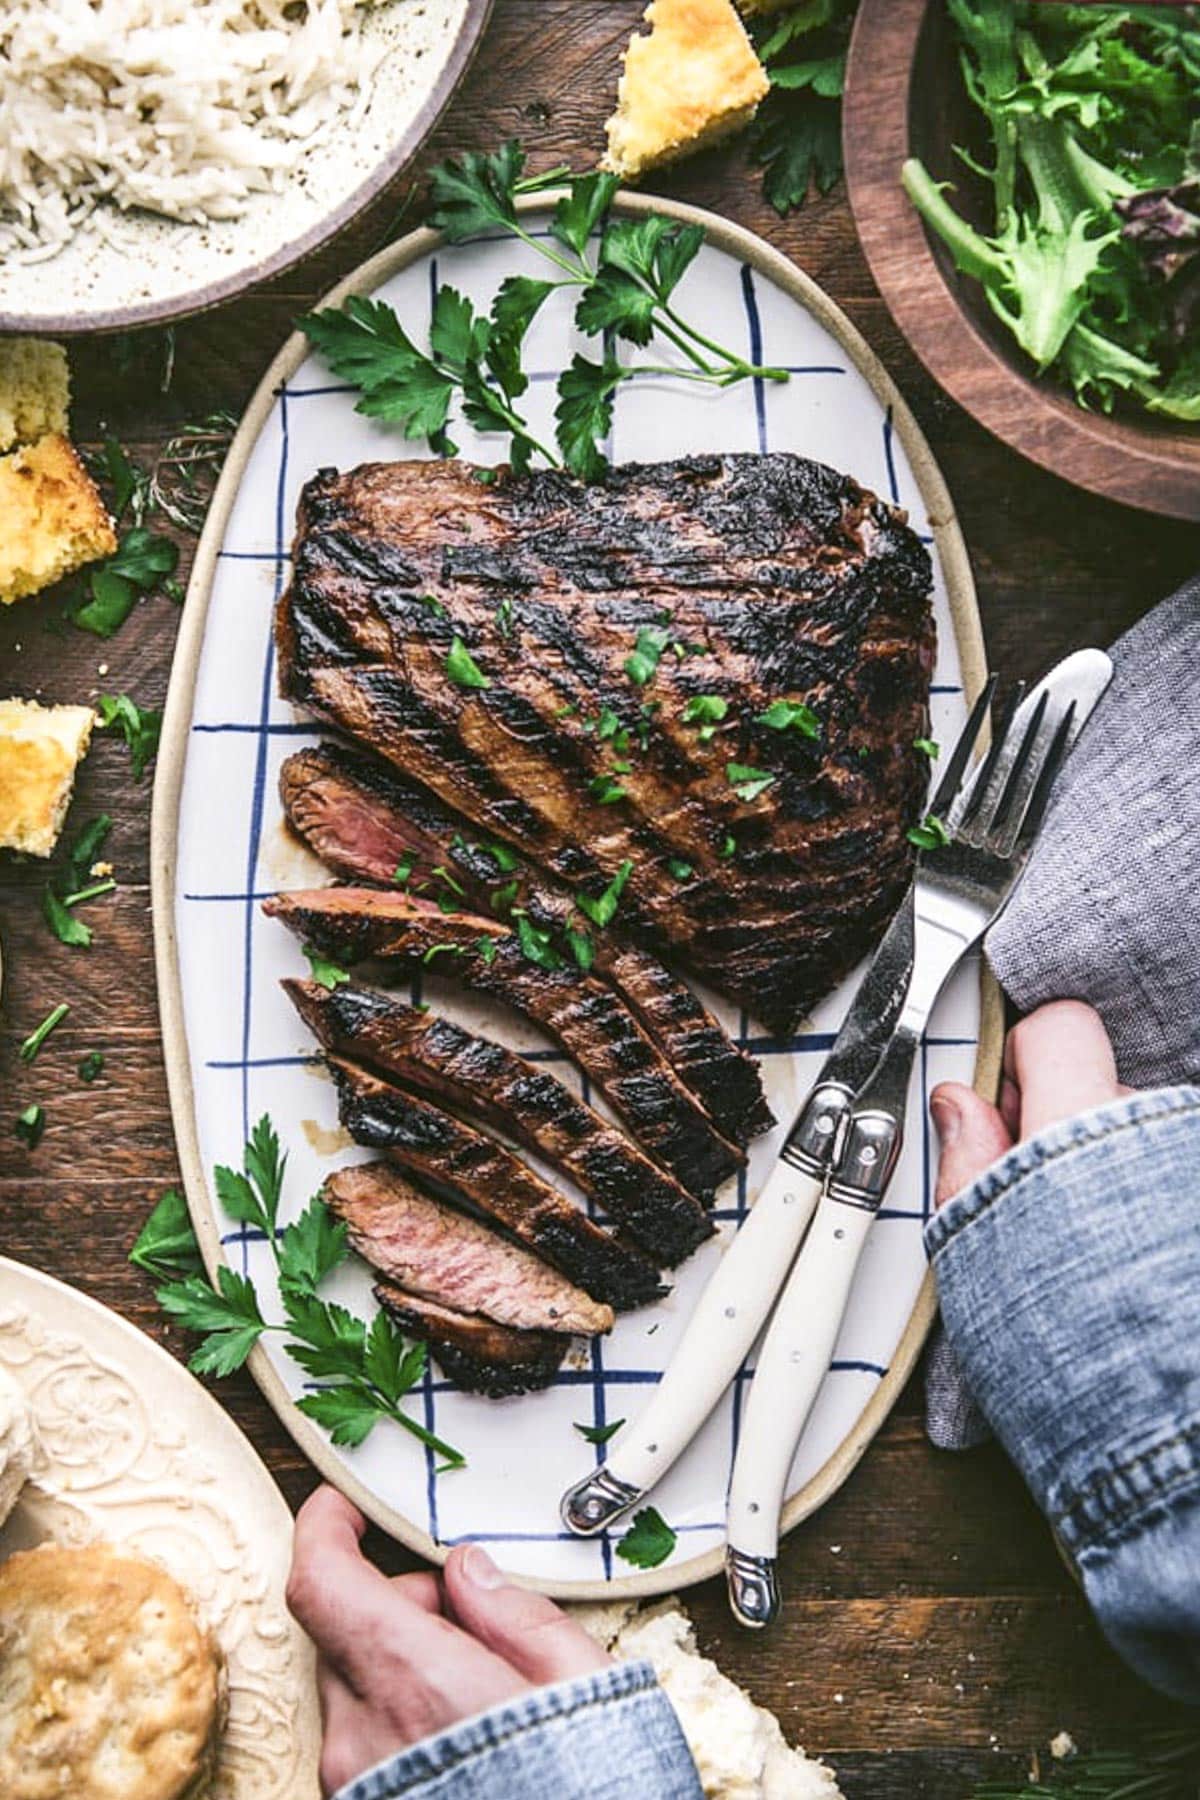 Hands serving a platter of marinated flank steak.